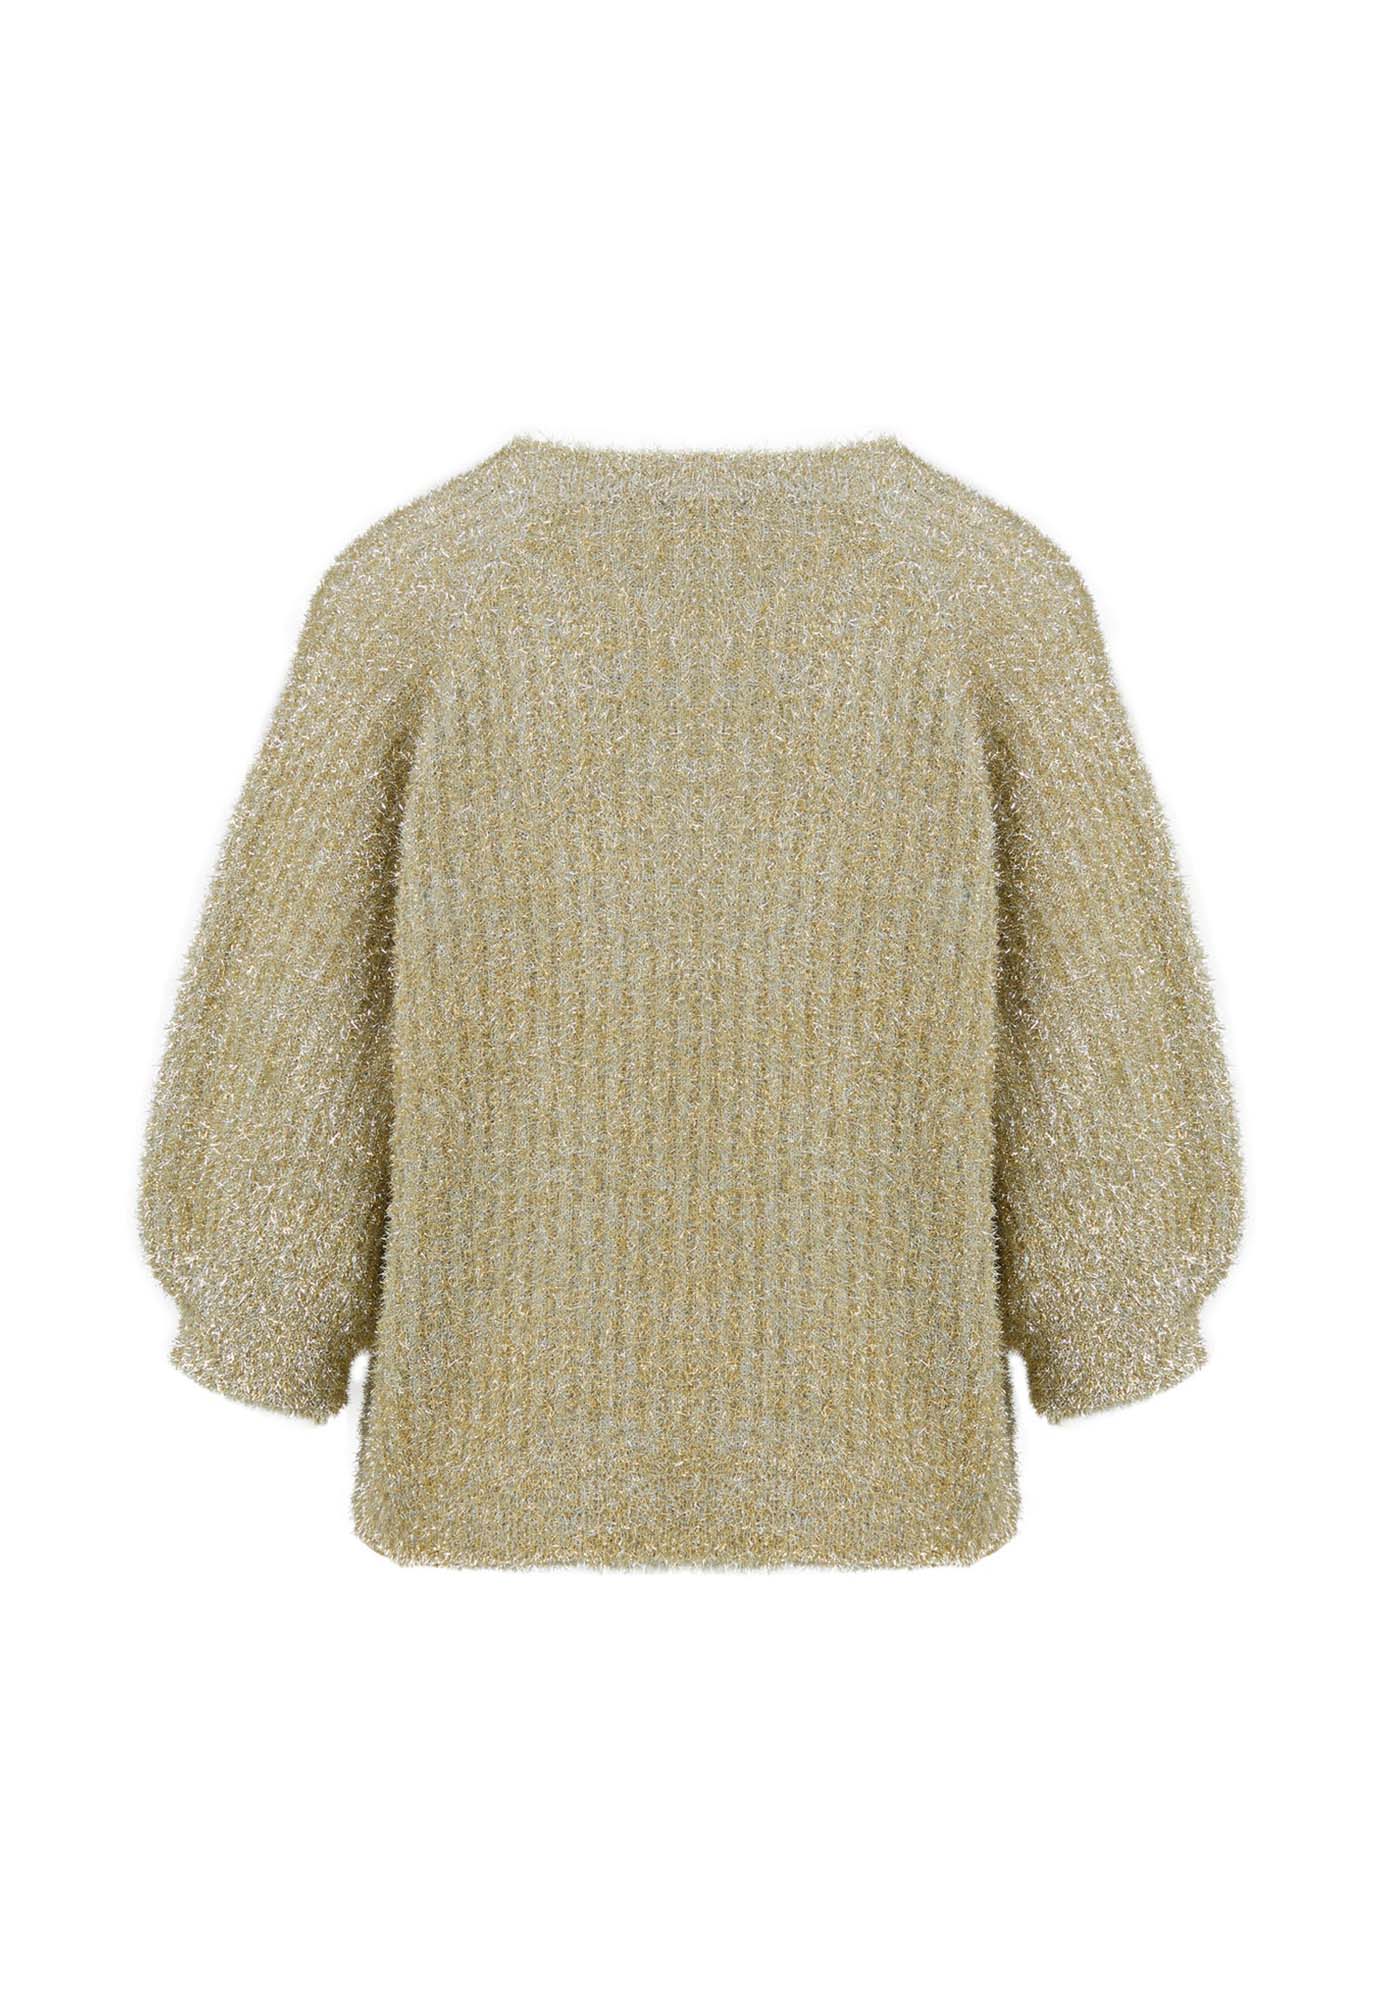 coster copenhagen - lurex knit - metallic gold